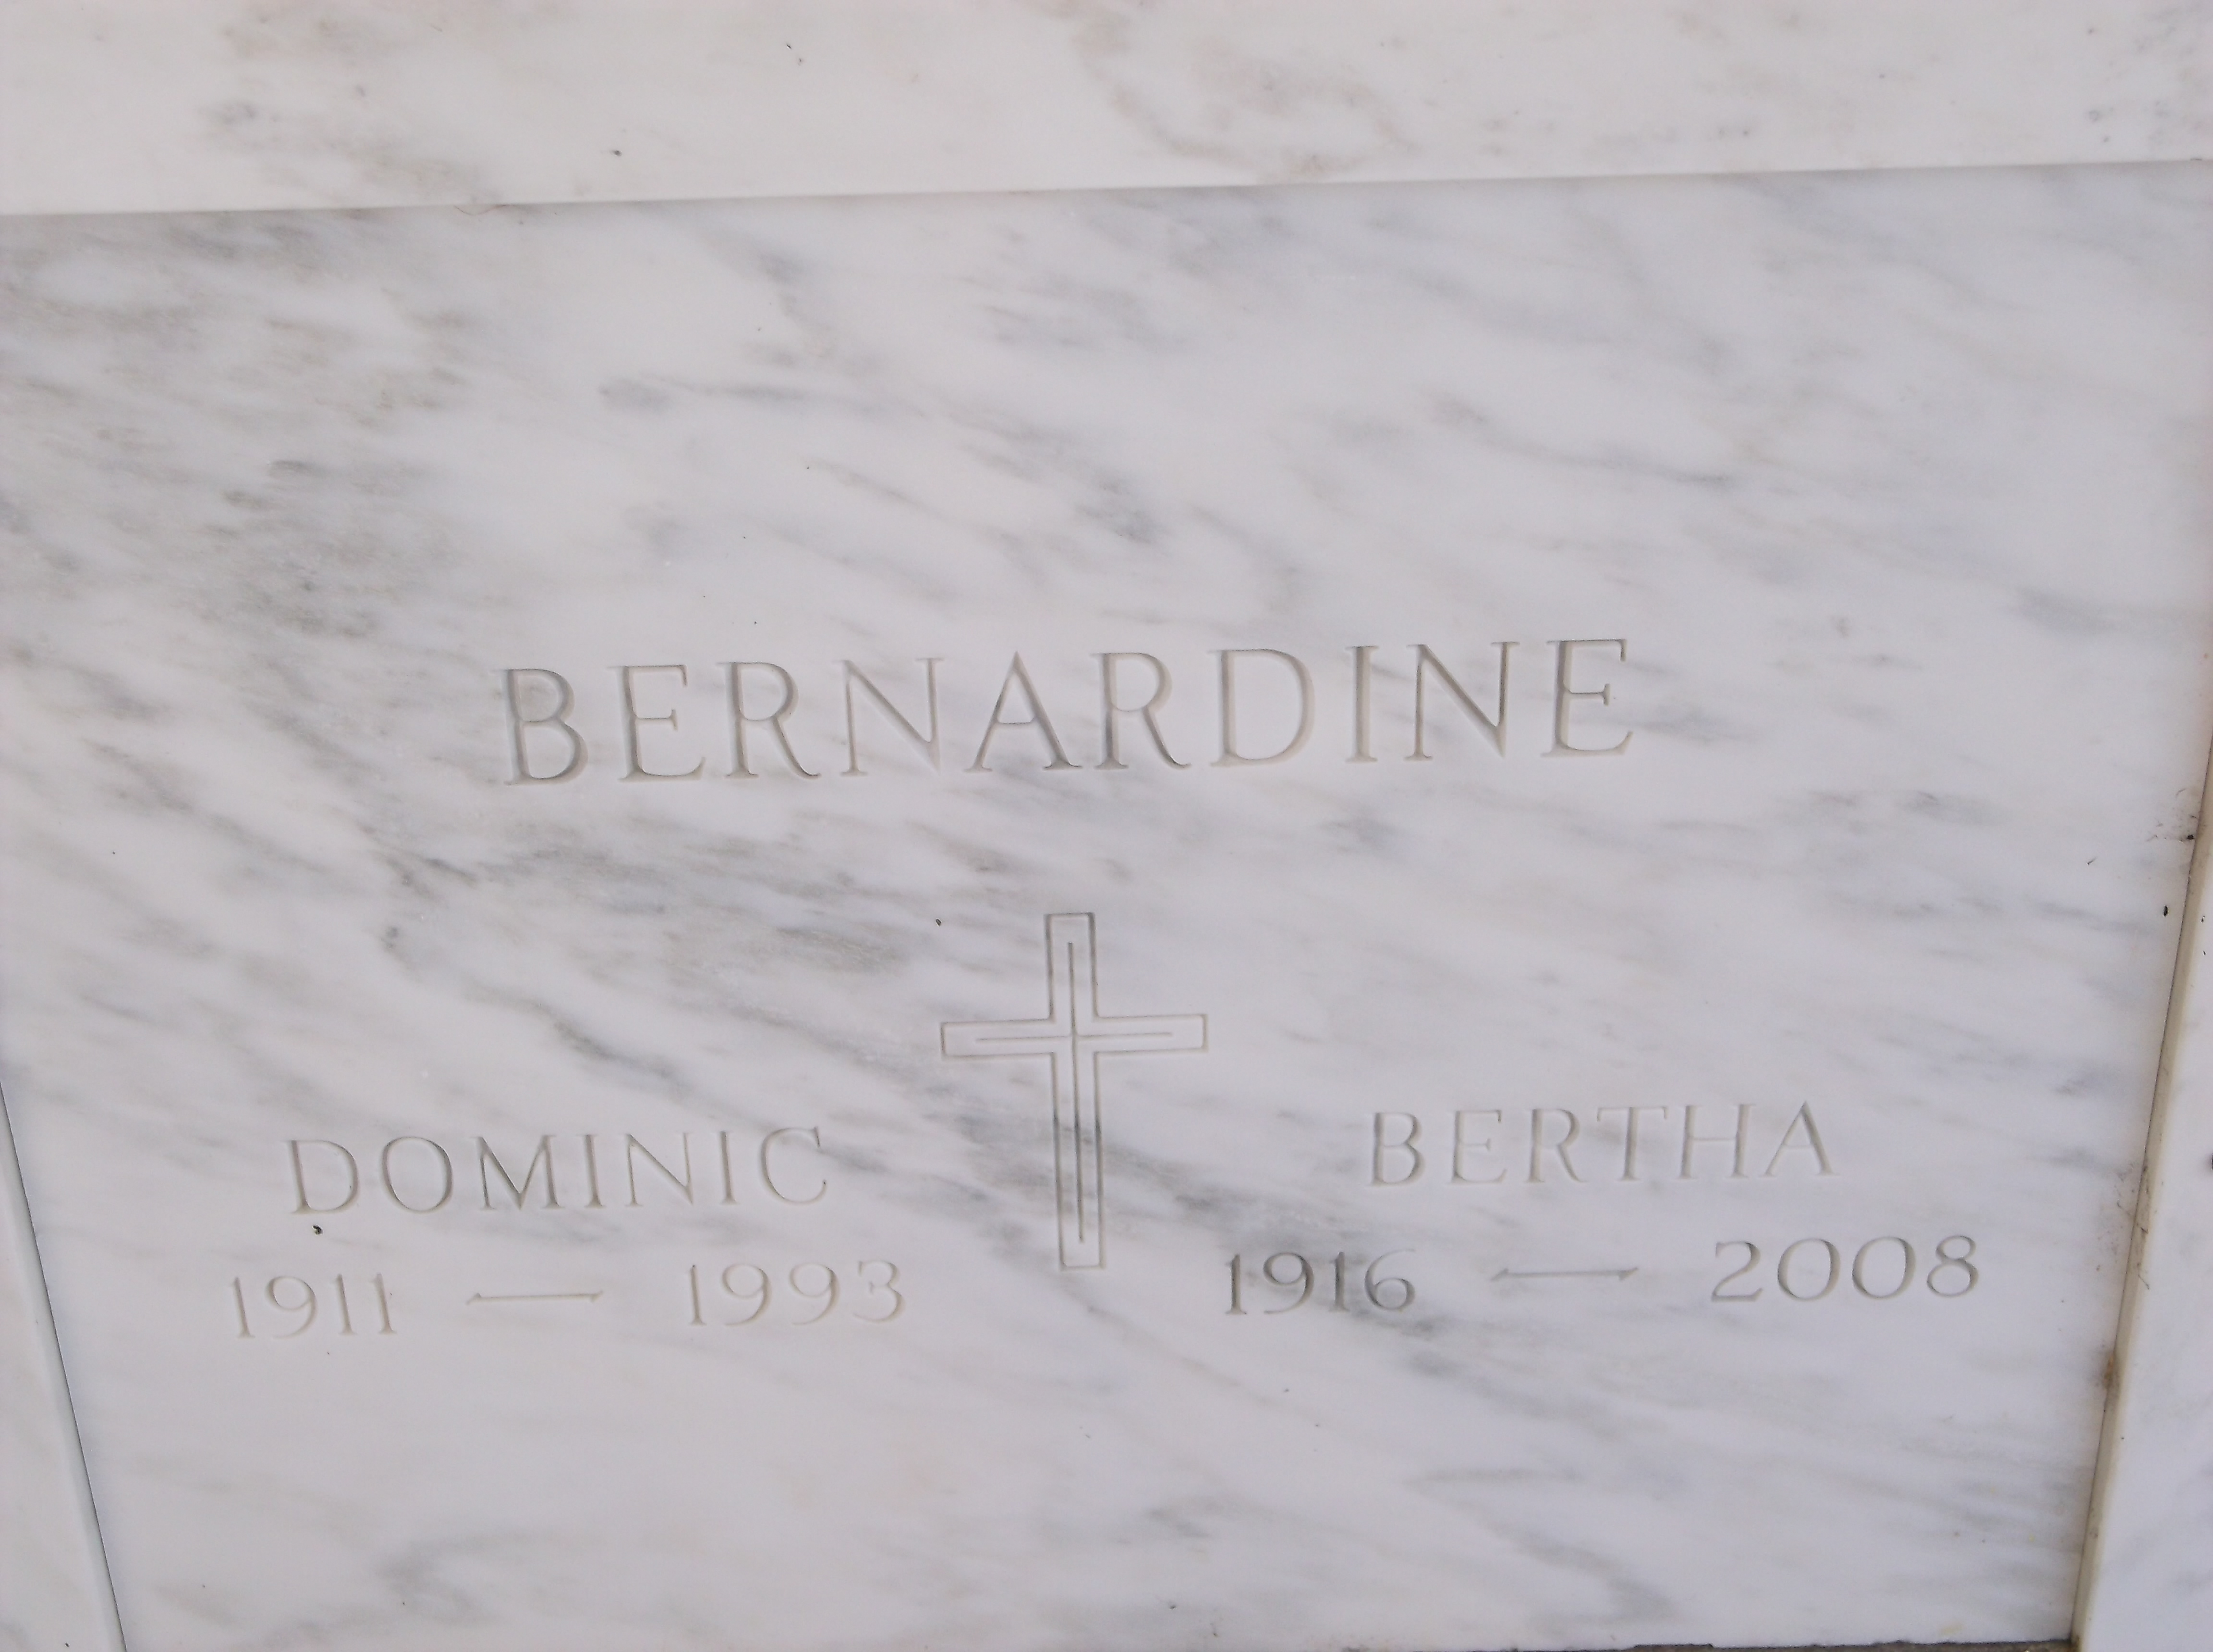 Dominic Bernardine